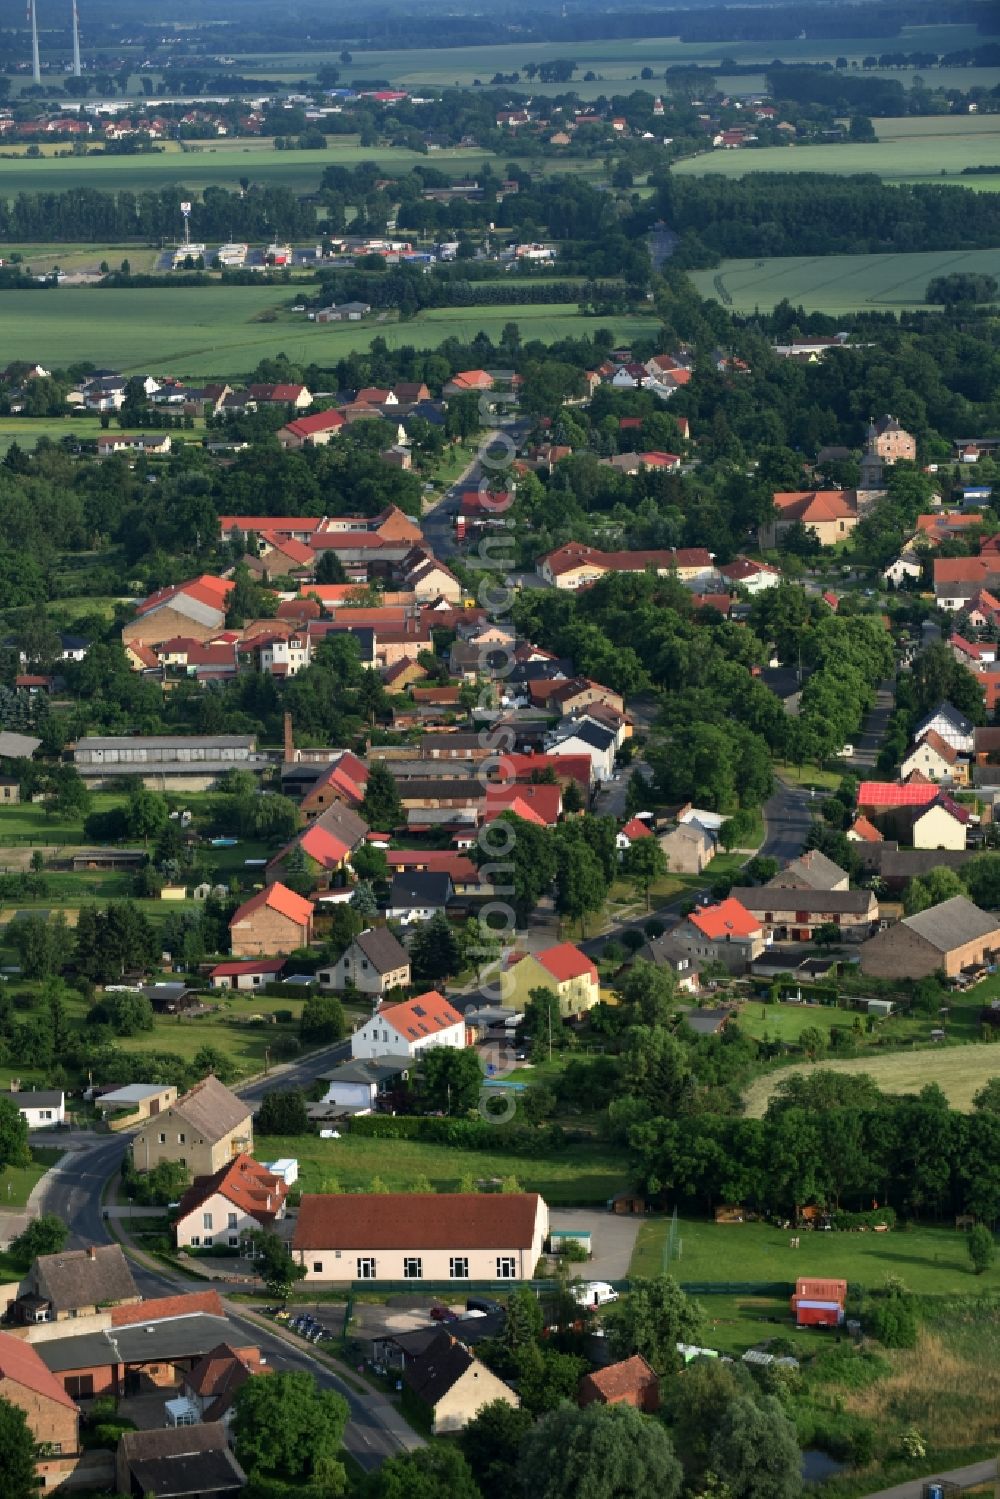 Aerial photograph Schwante - Village view of Schwante in the state Brandenburg